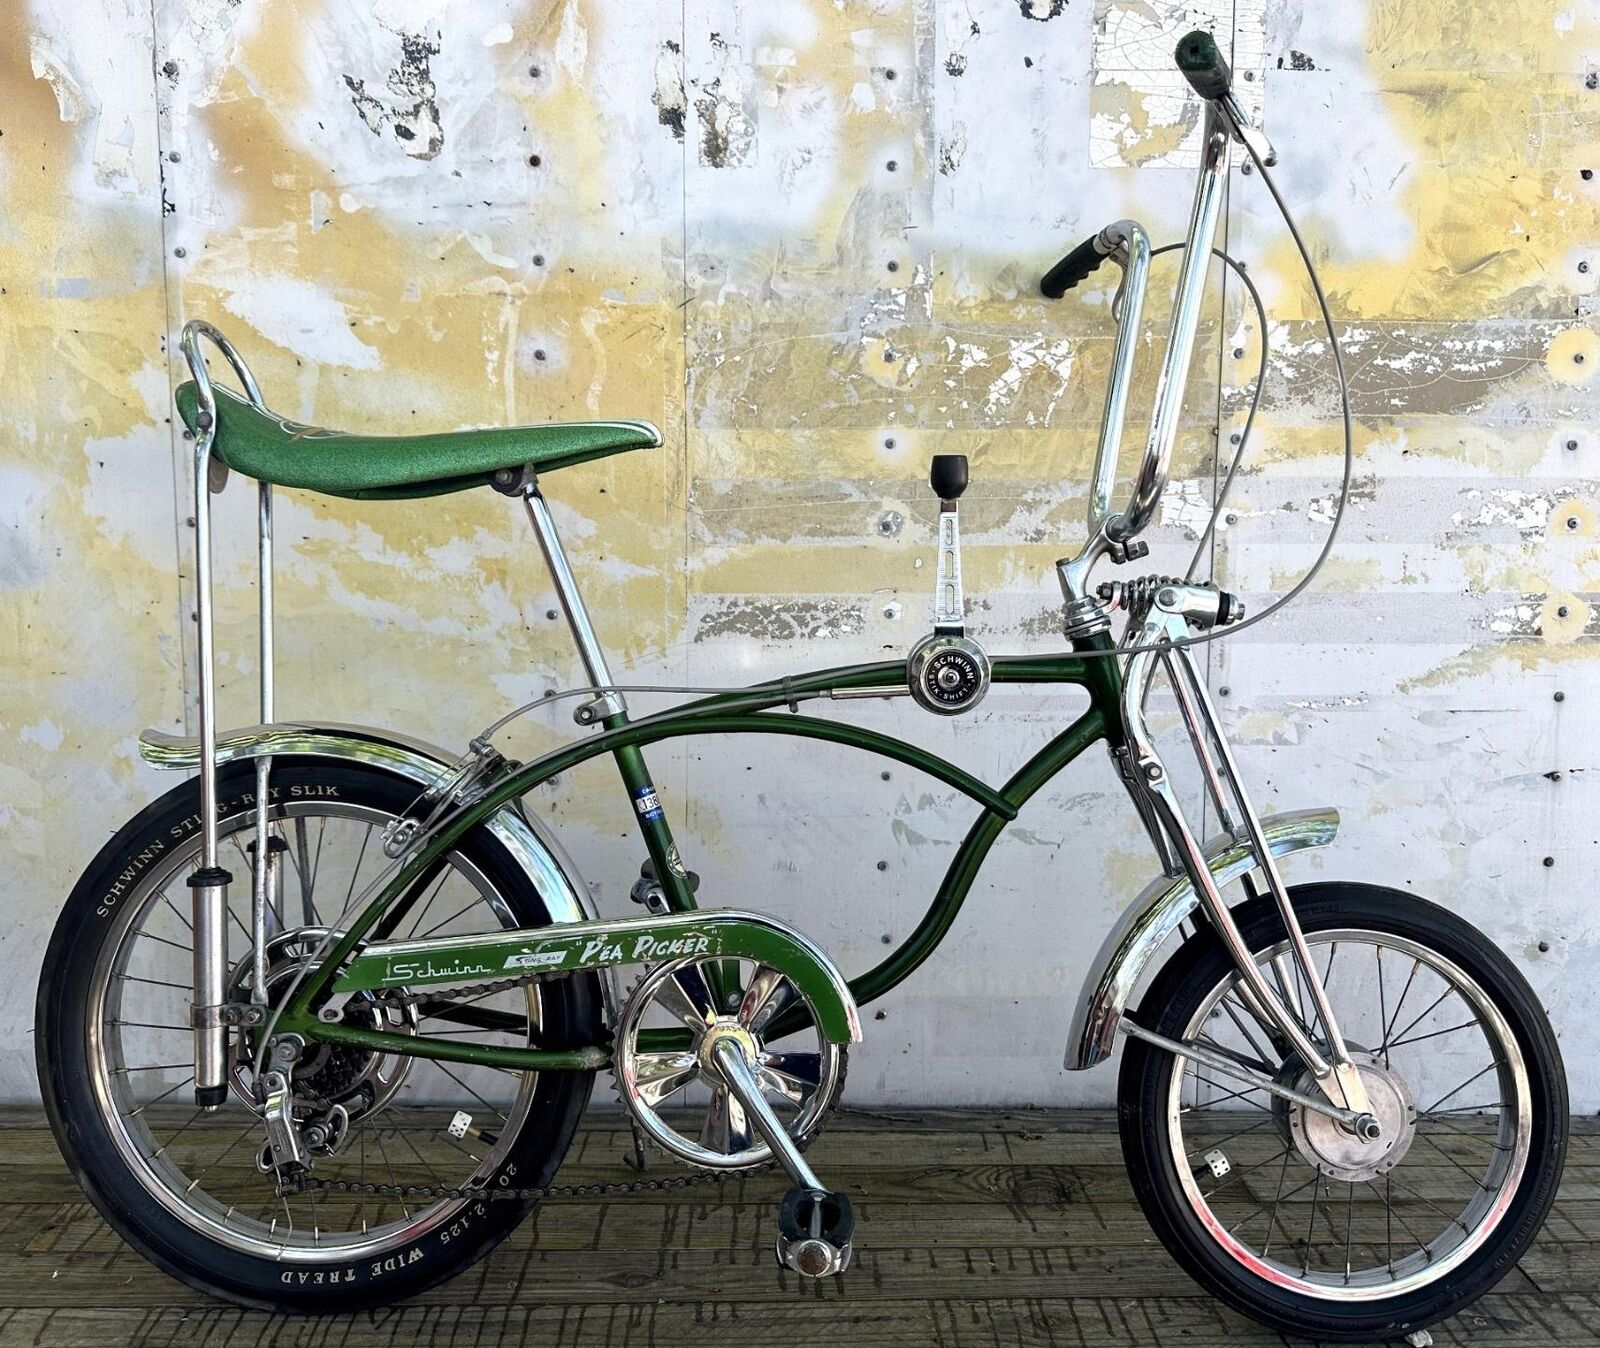 original 1970 Schwinn Krate PEA PICKER Bicycle 5 speed